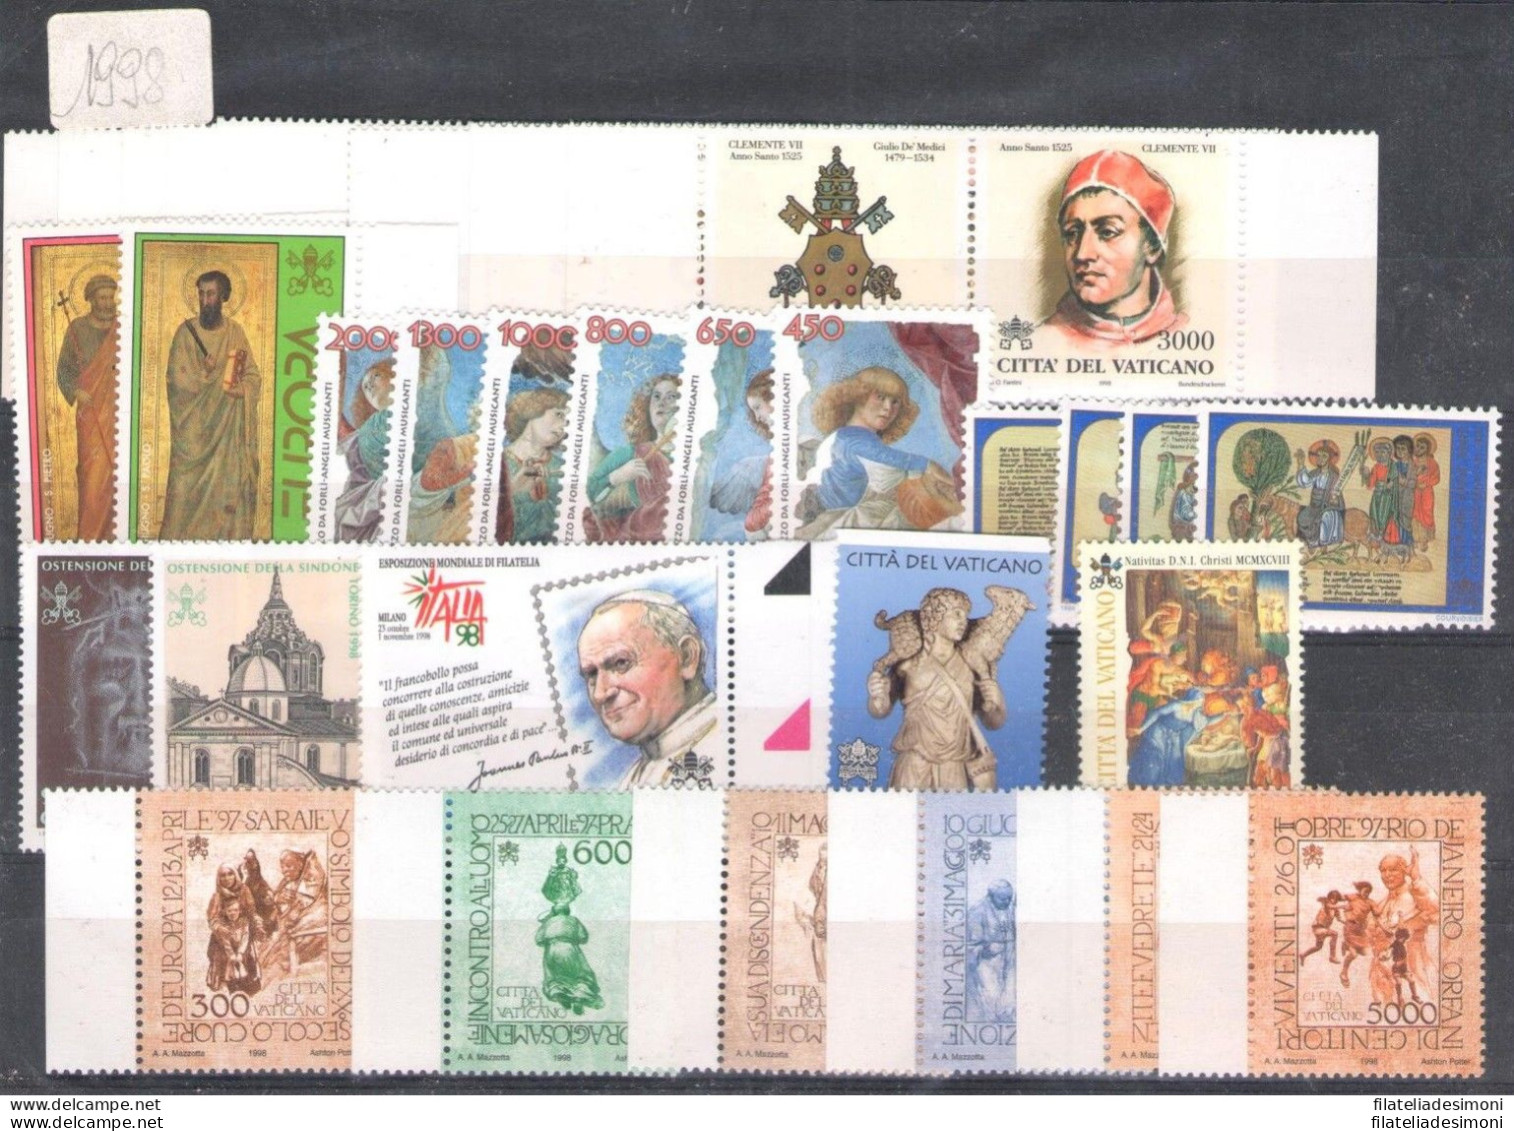 1978/2004 Vaticano, Francobolli nuovi,  Offerta Giovanni Paolo II, Annate Comple